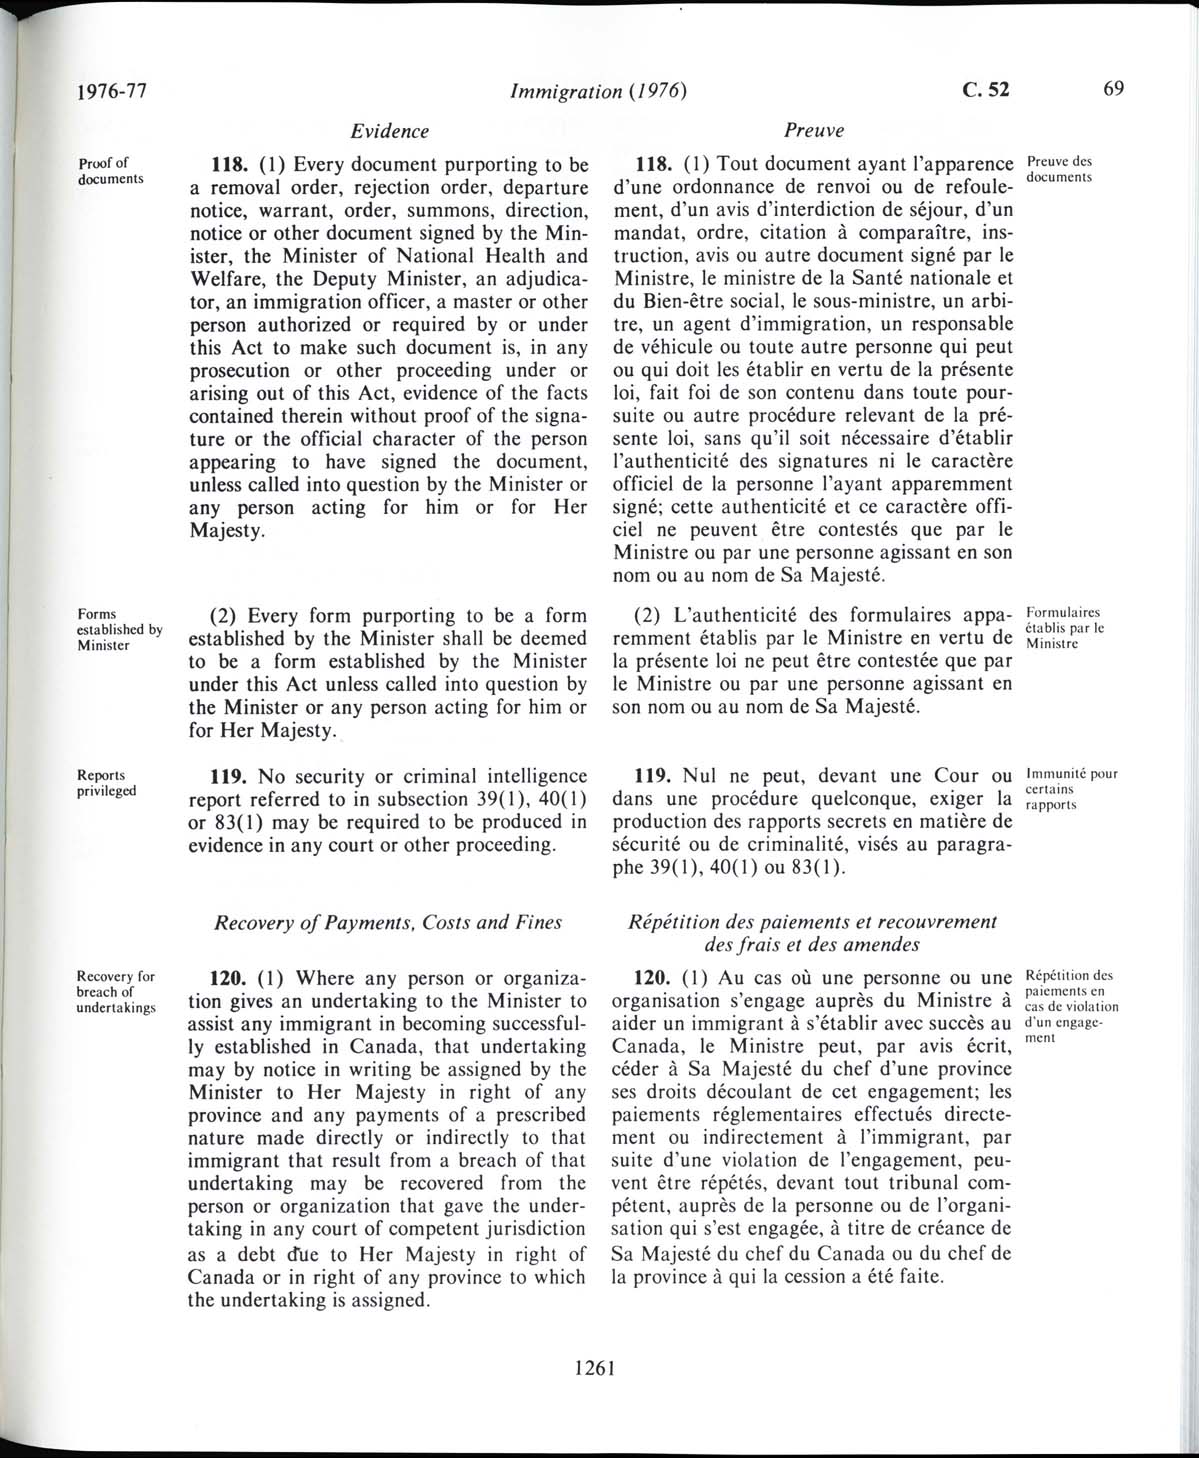 Page 1261 Loi sur l’immigration de 1976